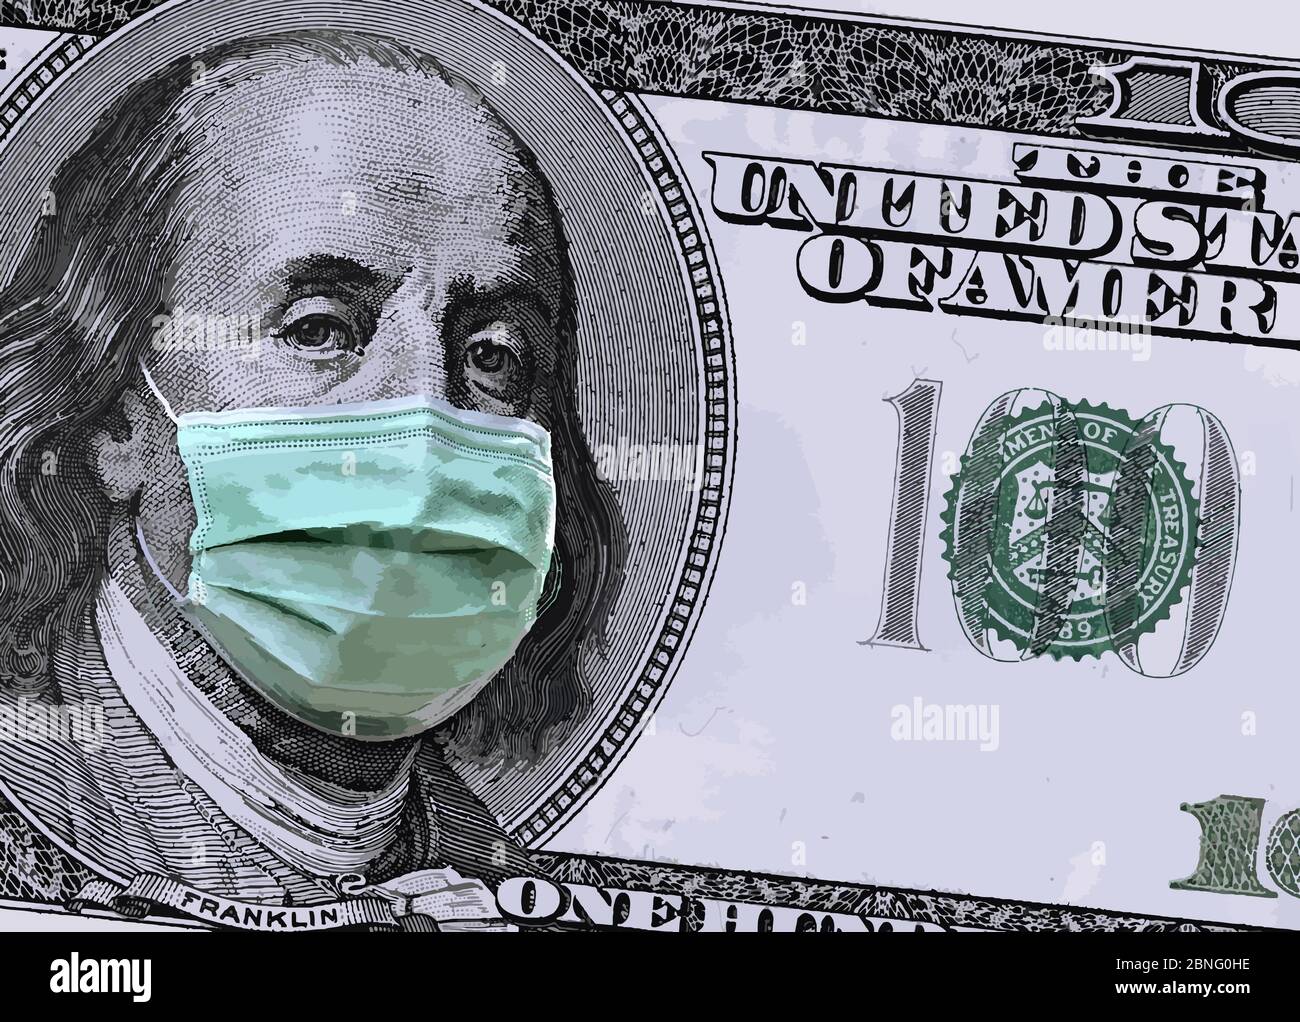 Eine Nahaufnahme eines 100-Dollar-Geldscheins zeigt Benjamin Franklin, der eine chirurgische Maske trägt, um sich vor dem Covid-19-Coronavirus zu schützen. Dies ist eine Illustration Stock Vektor